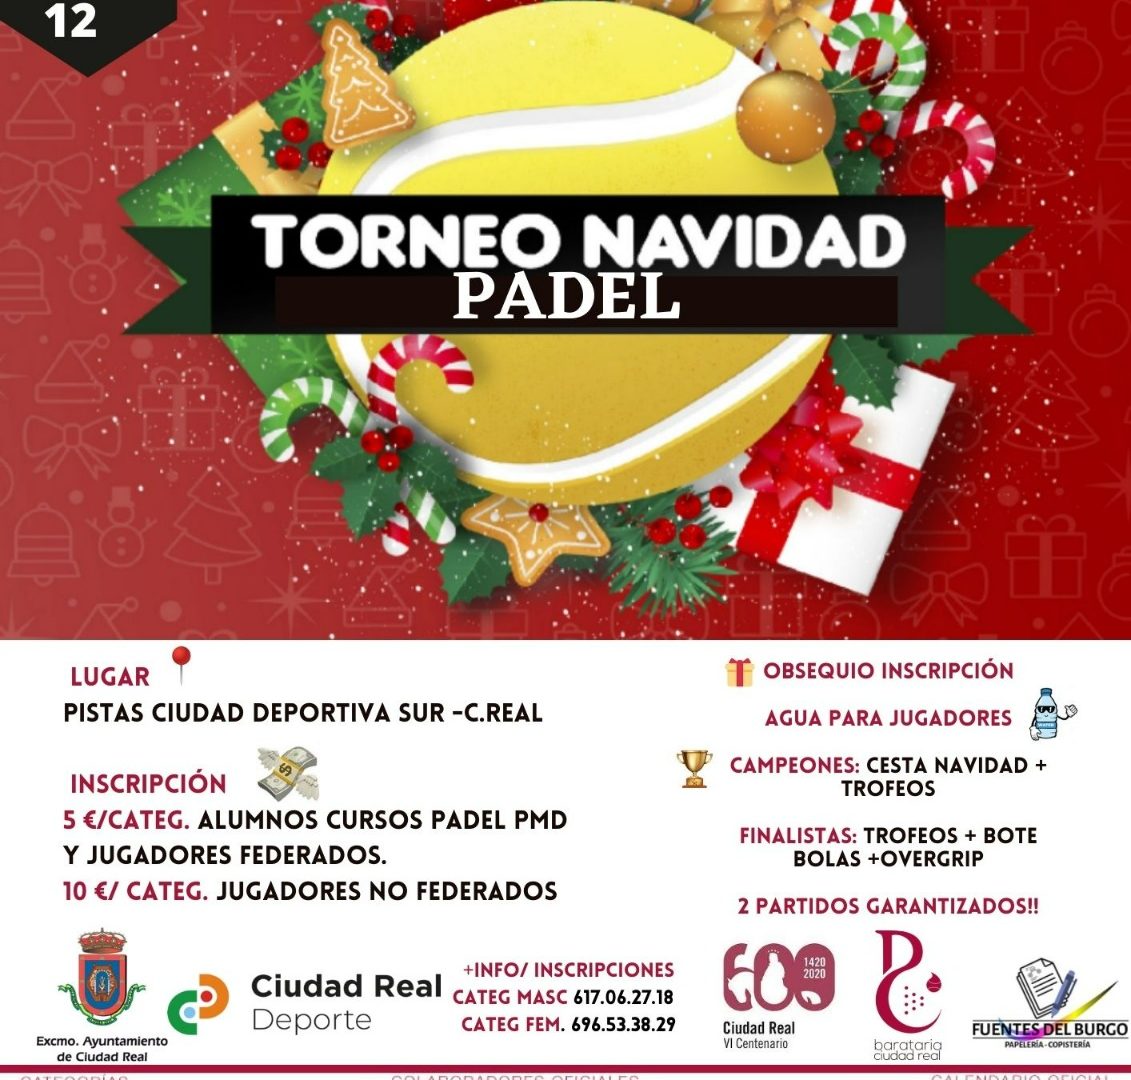 Torneo de Navidad Patronato Municipal de Deportes de Ciudad Real